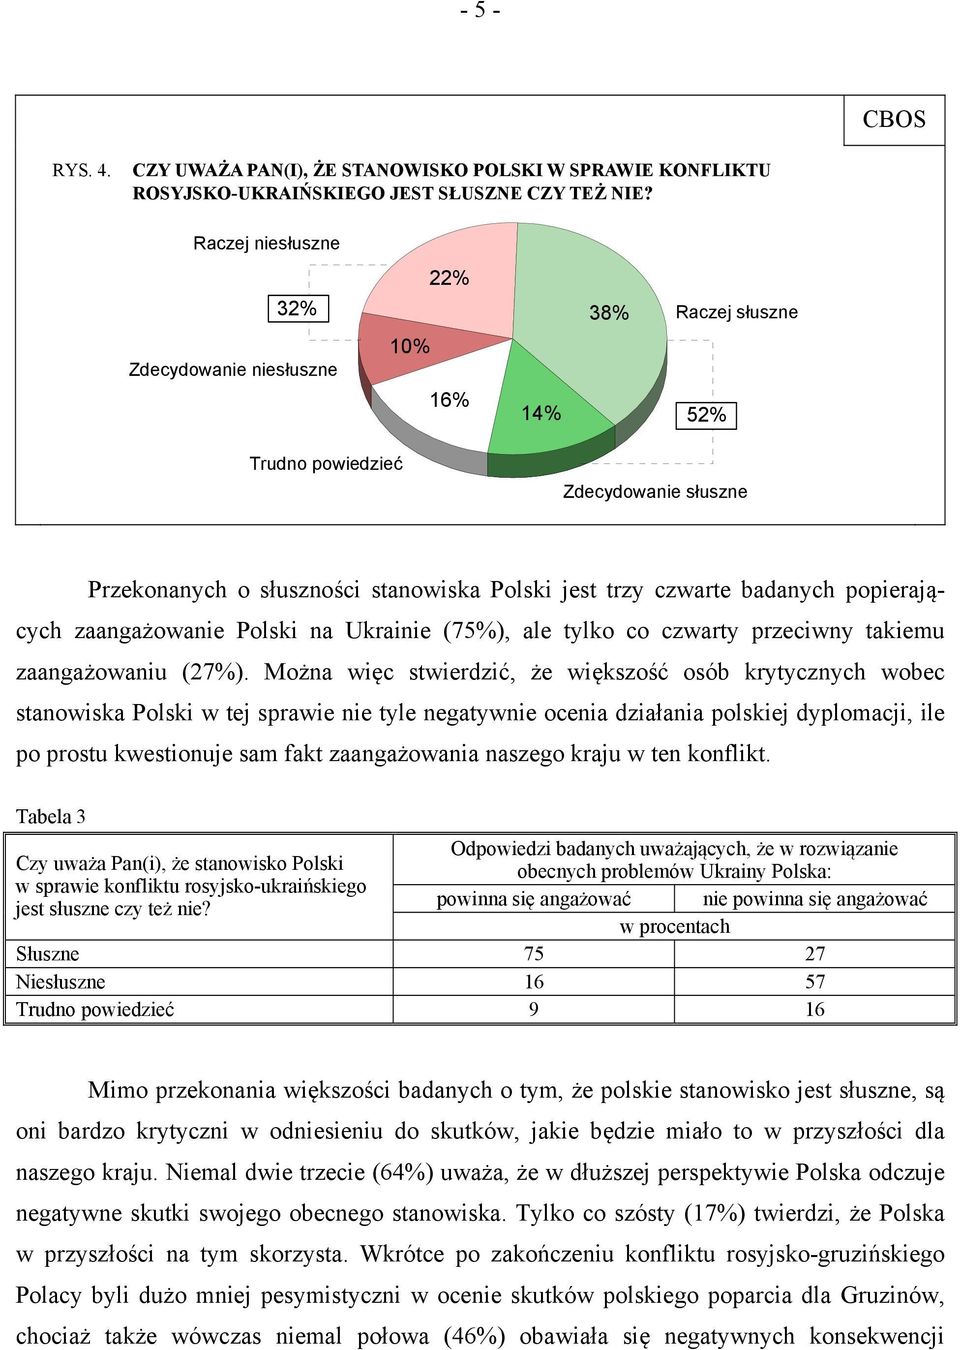 popierających zaangażowanie Polski na Ukrainie (75%), ale tylko co czwarty przeciwny takiemu zaangażowaniu (27%).